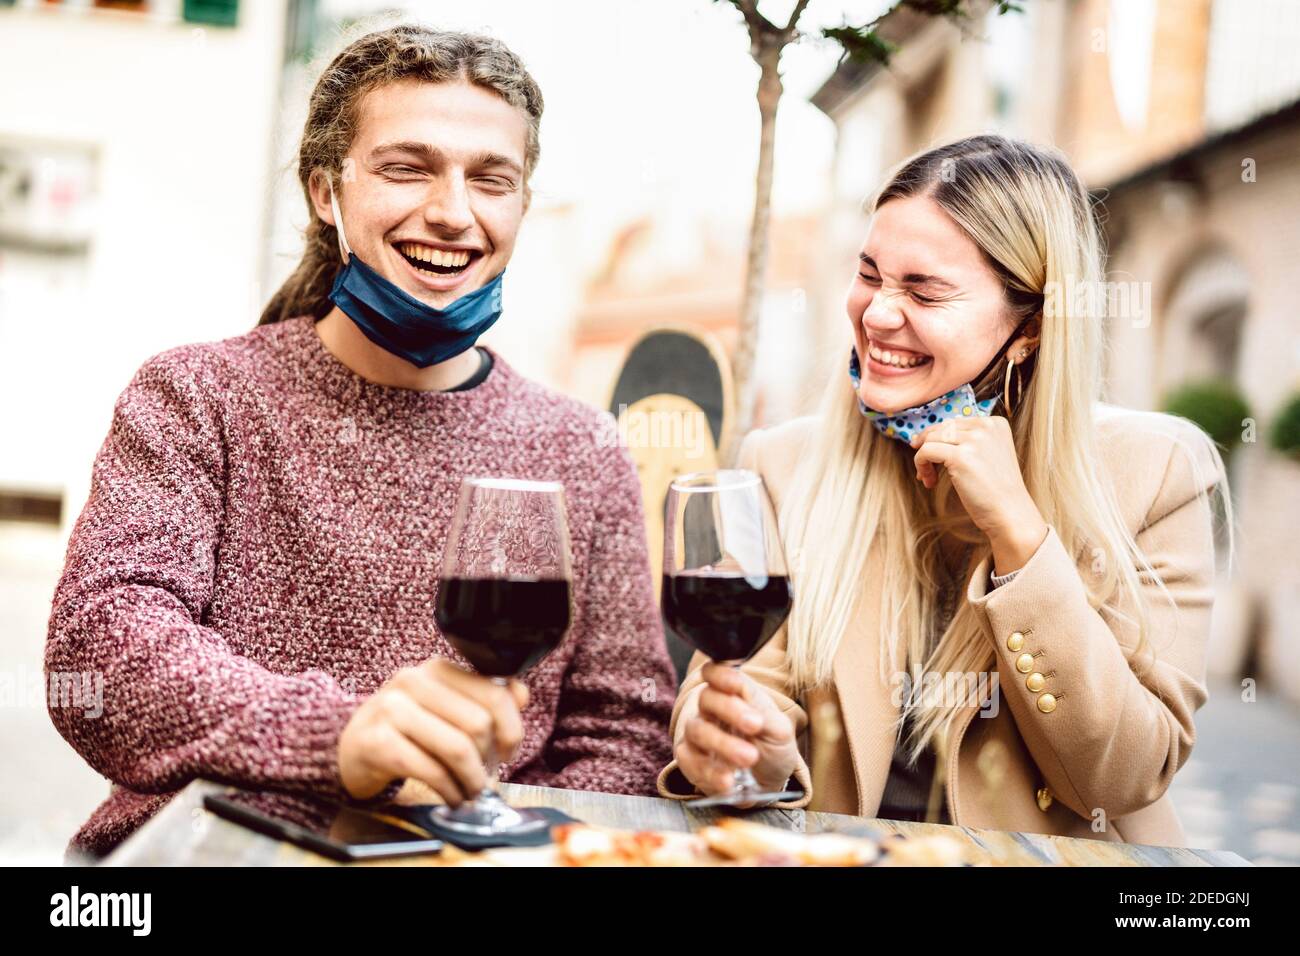 Giovane coppia innamorata di maschere aperte che si divertono Al wine bar all'aperto - felici amanti milleniali godendo il pranzo insieme nel patio del ristorante Foto Stock